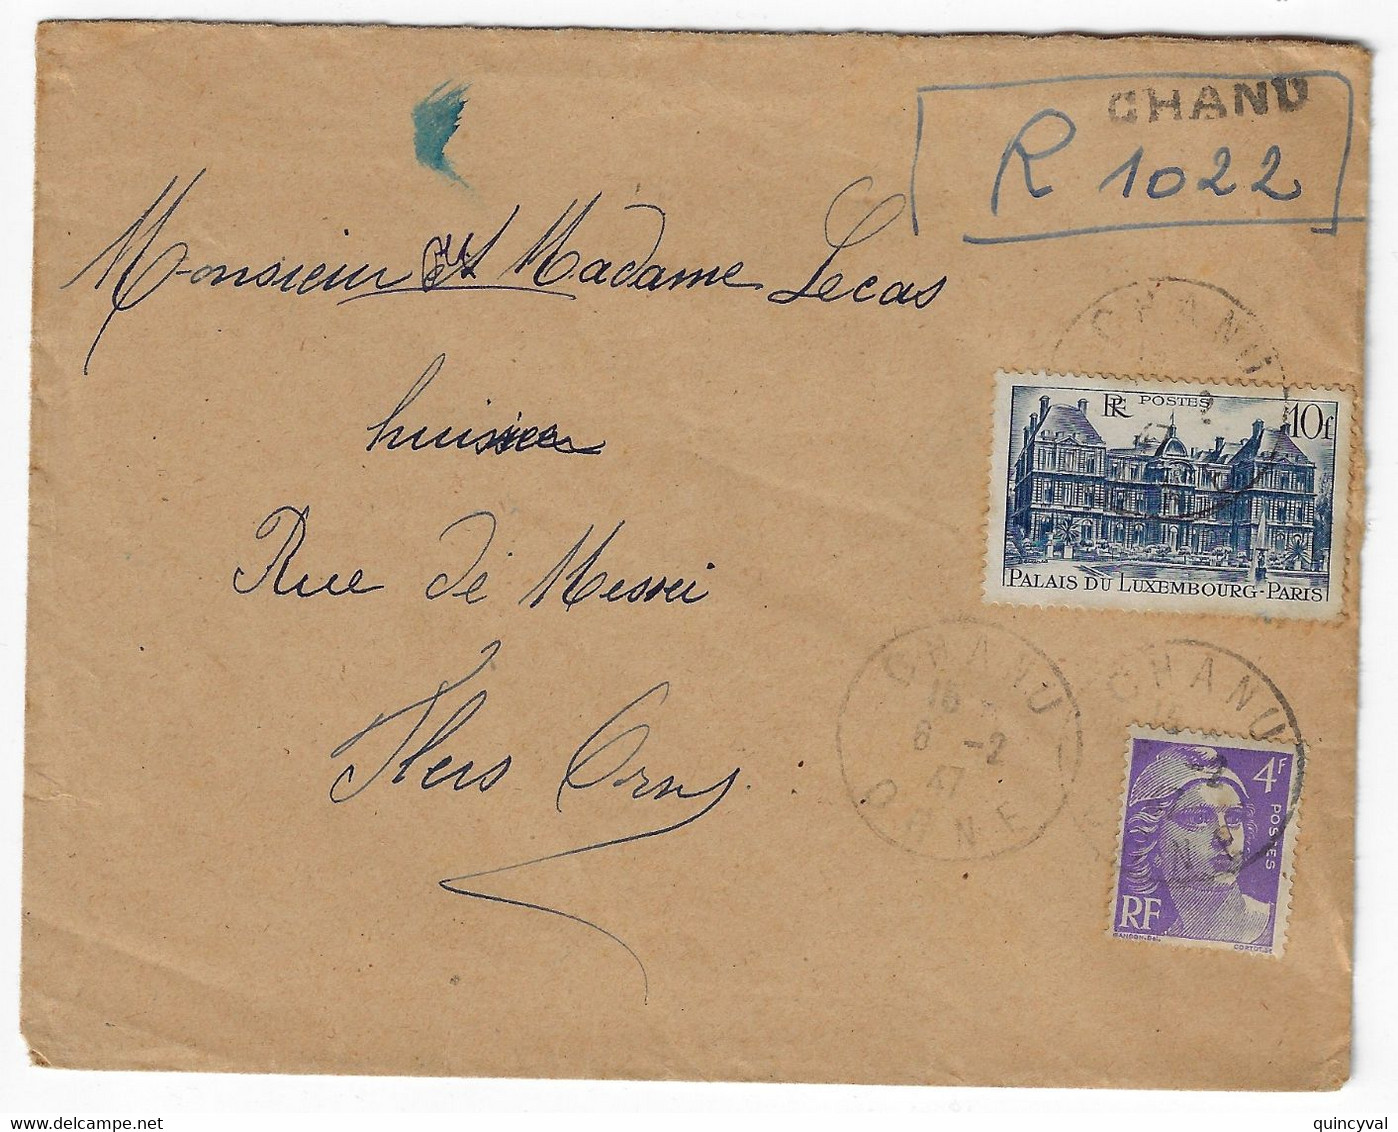 CHANU Orne Lettre Recommandée "Provisoire" Manuscrit 10 F Palais Luxembourg 4 F Violet Yv 760 718 Ob 6 2 1947 - Covers & Documents